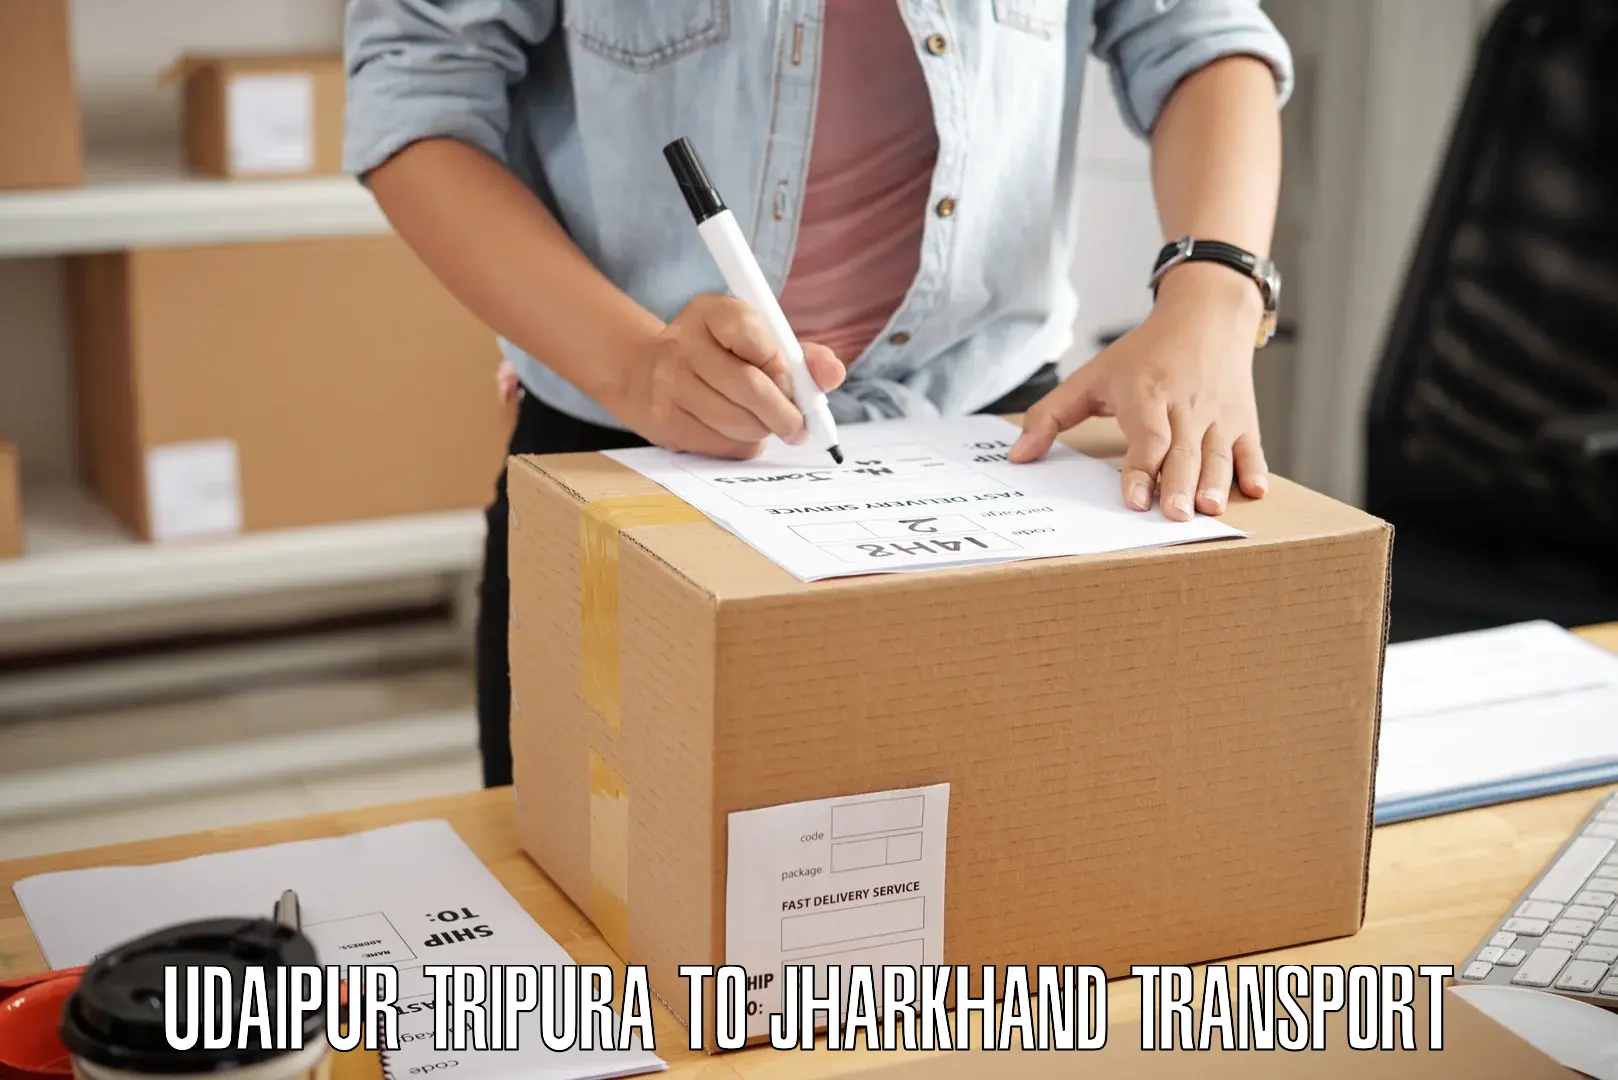 Vehicle transport services Udaipur Tripura to Bishrampur Palamu